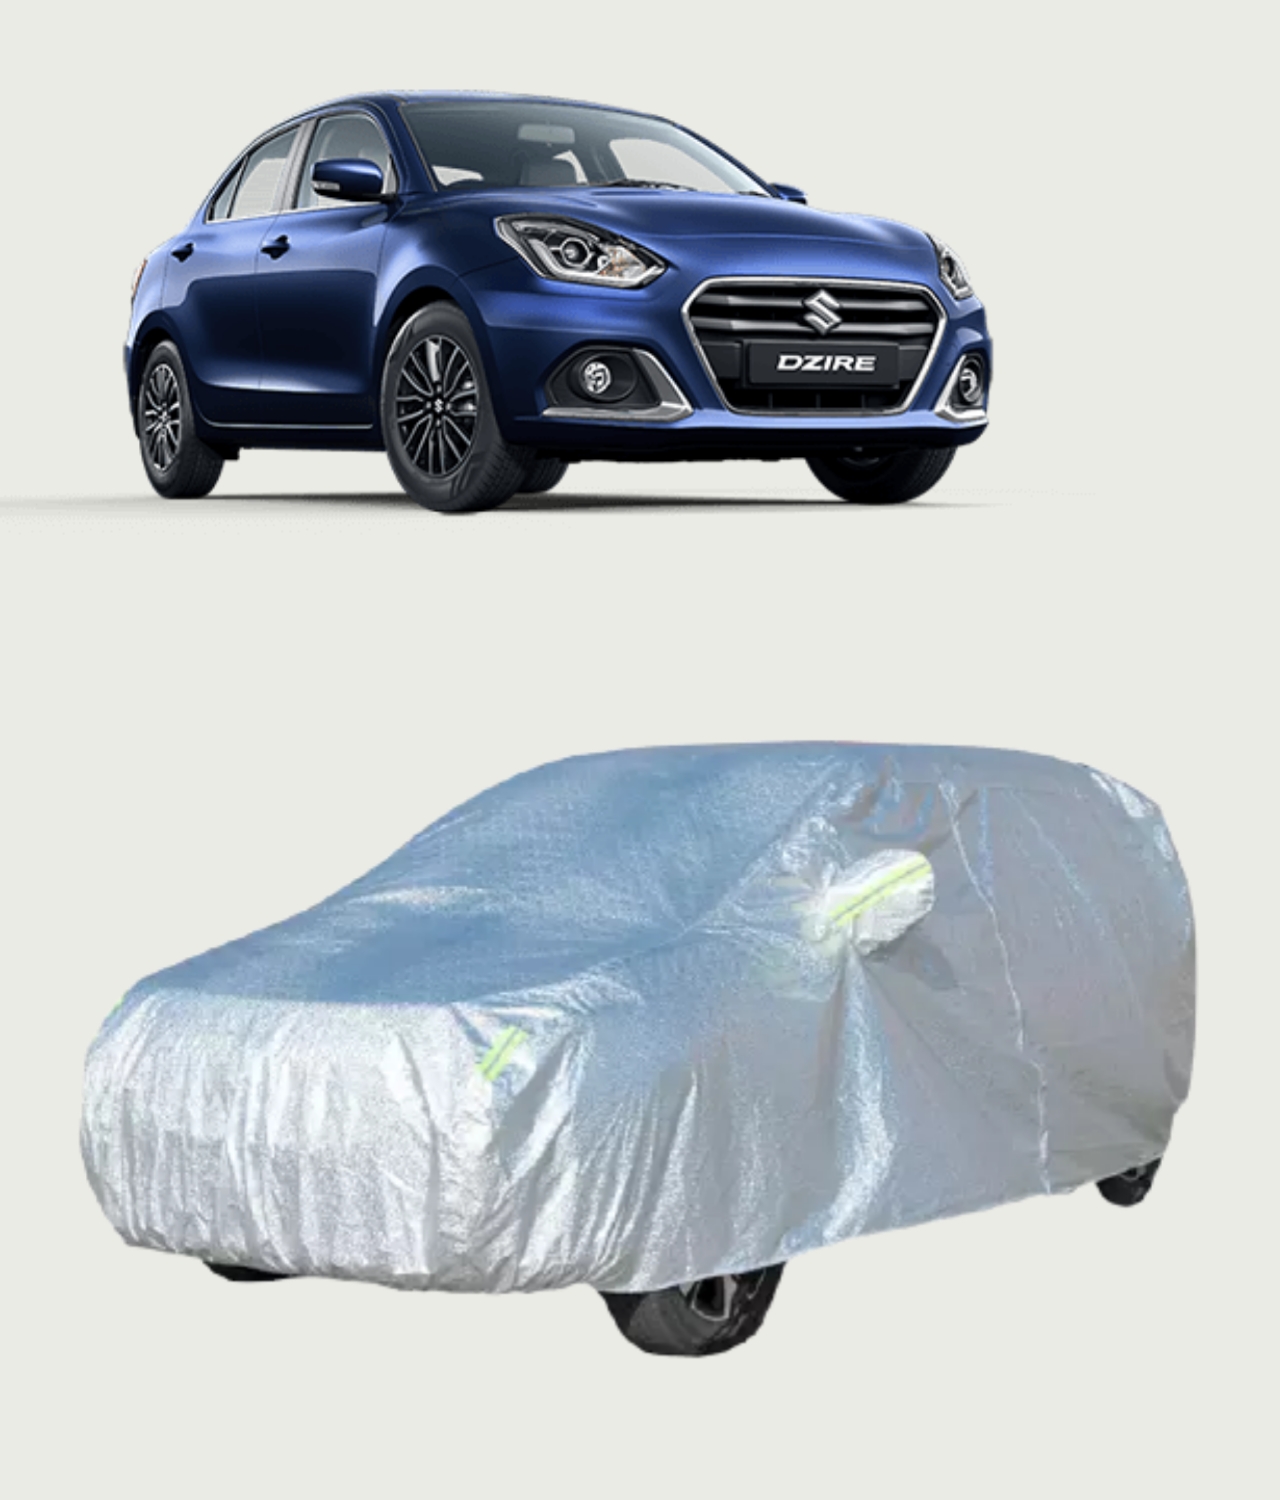 Maruti Suzuki Dzire Premium Silver Outdoor Car Cover - Nellai Tarpaulin